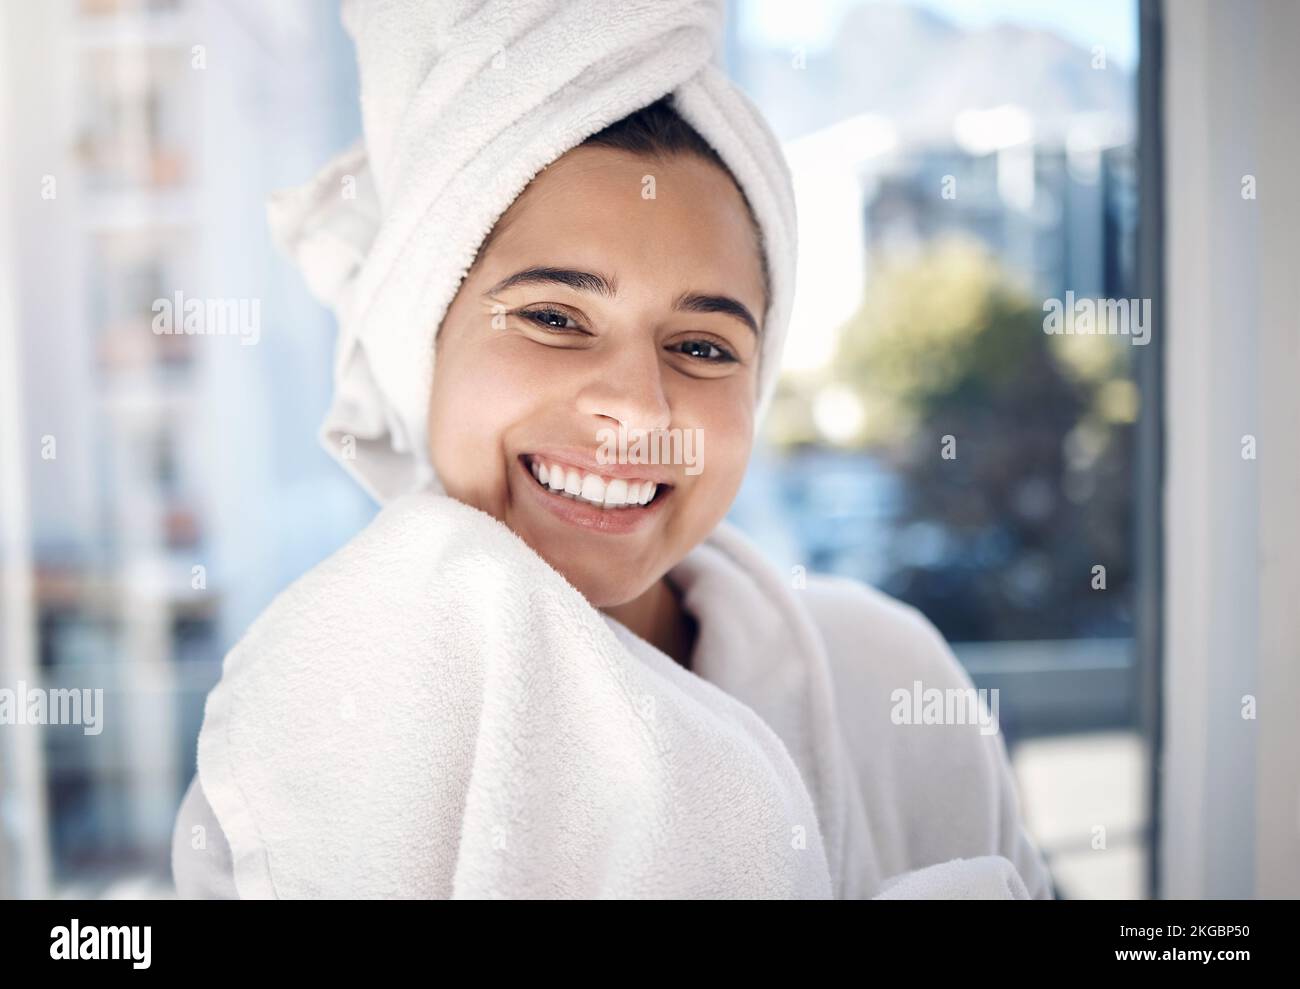 Frau, Spa und fröhliches Porträtlächeln für Hygiene, Waschen oder Schönheitspflege oder kosmetische Bad-Wellnessbehandlungen. Dusche, lächelndes Gesicht mit Zähnen drinnen Stockfoto